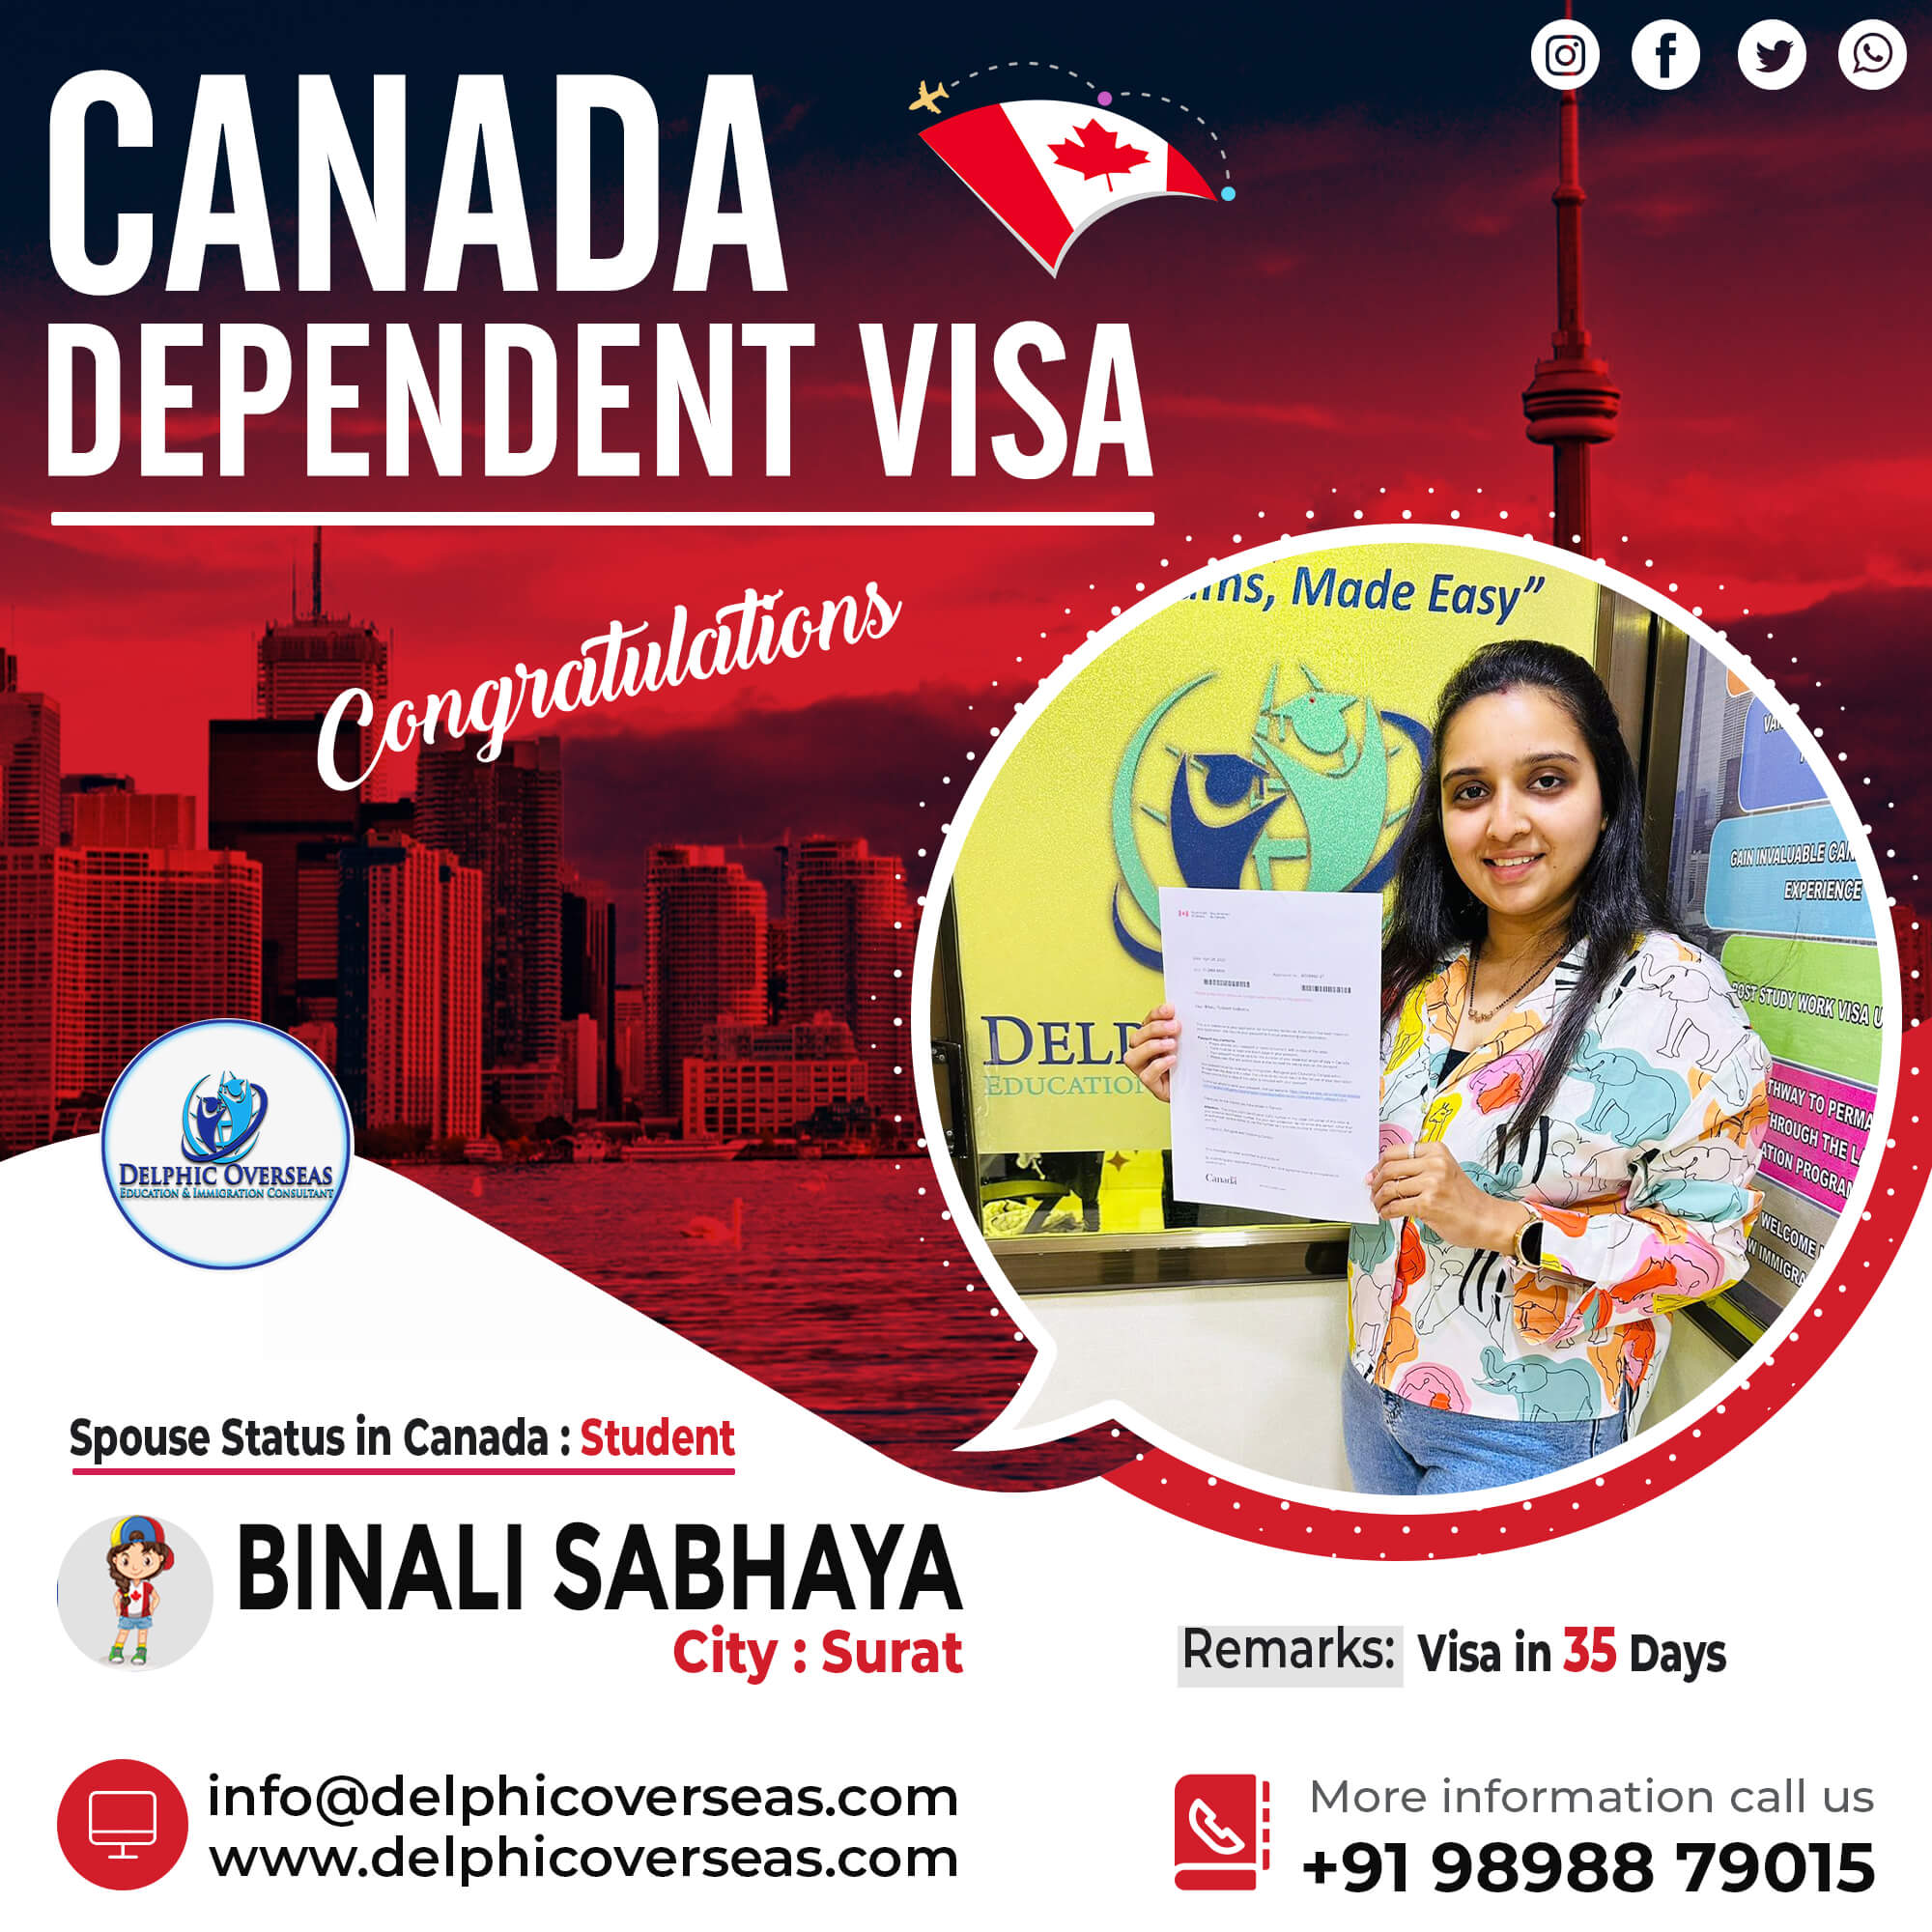 Binali Sabhaya Canada Dependent Visa Success Story